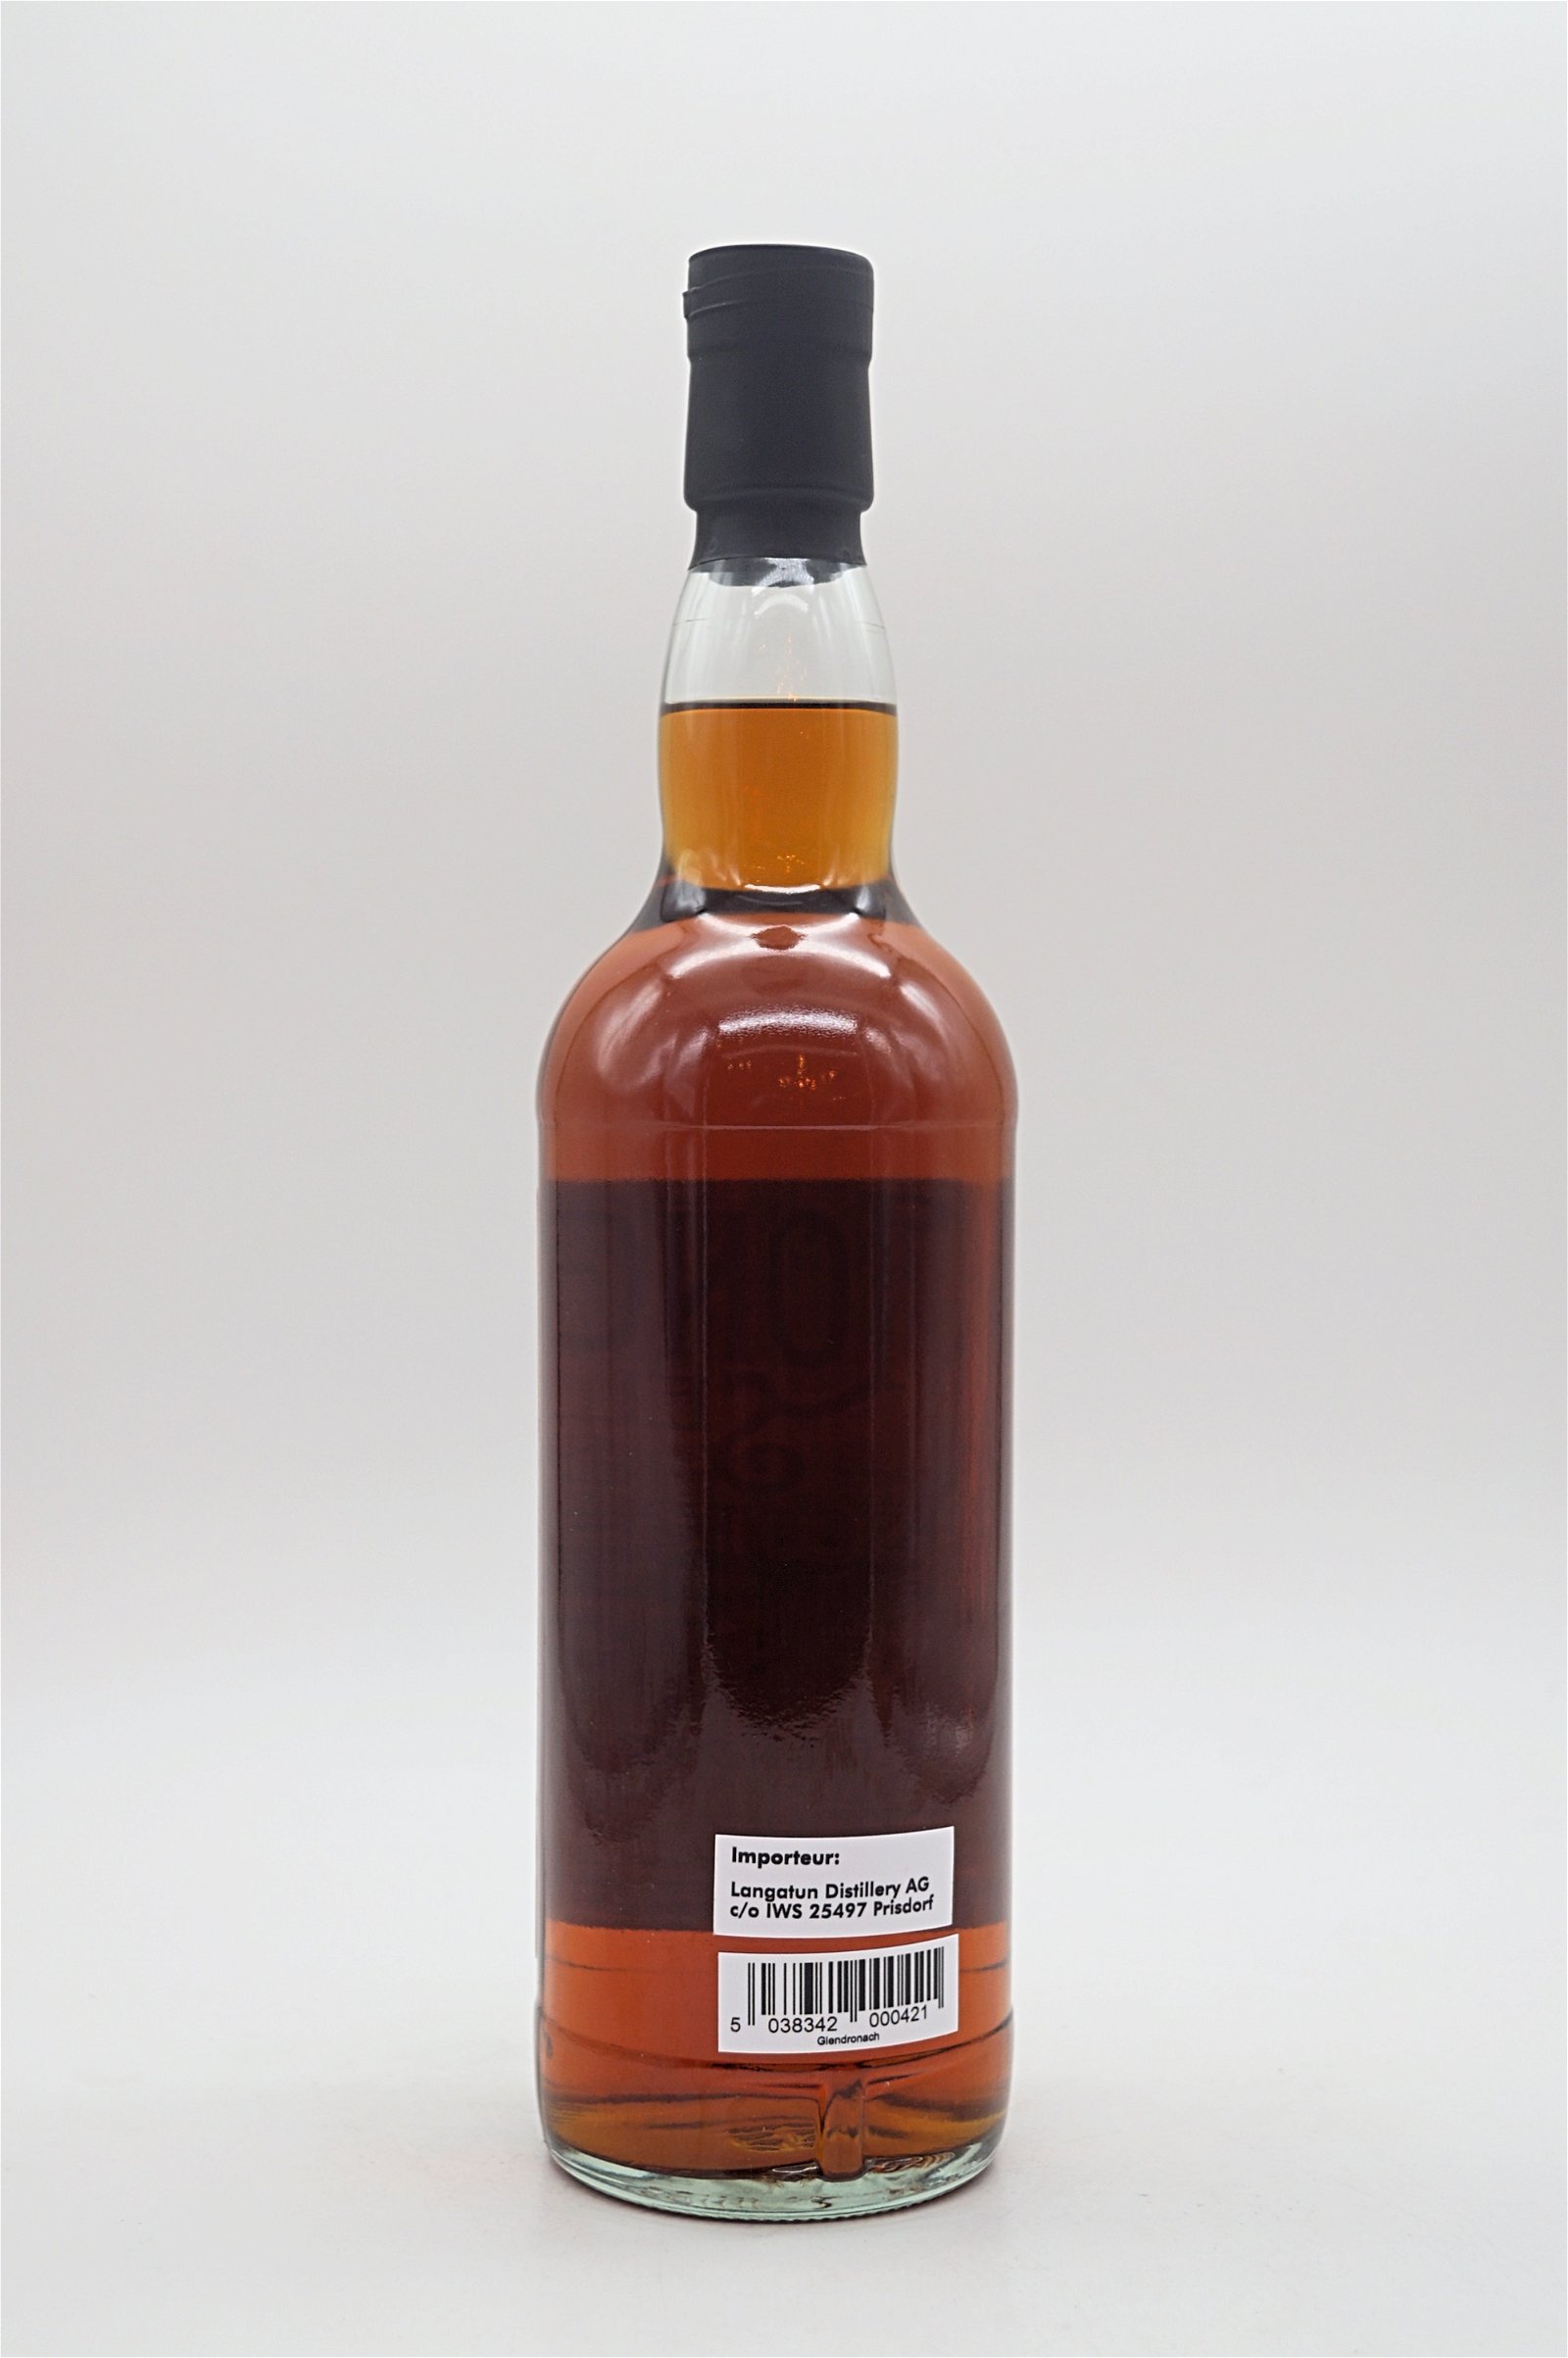 LongValley Selection Glendronach 2009 First Fill Sherry Butt Single Malt Scotch Whisky